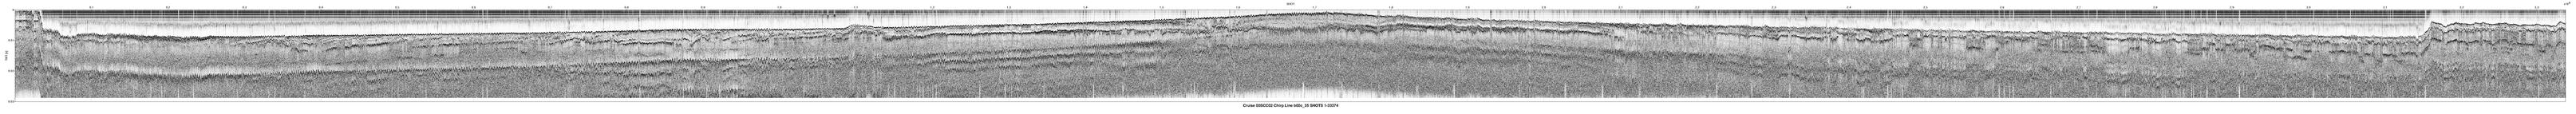 00SCC02 b00c_35 seismic profile image